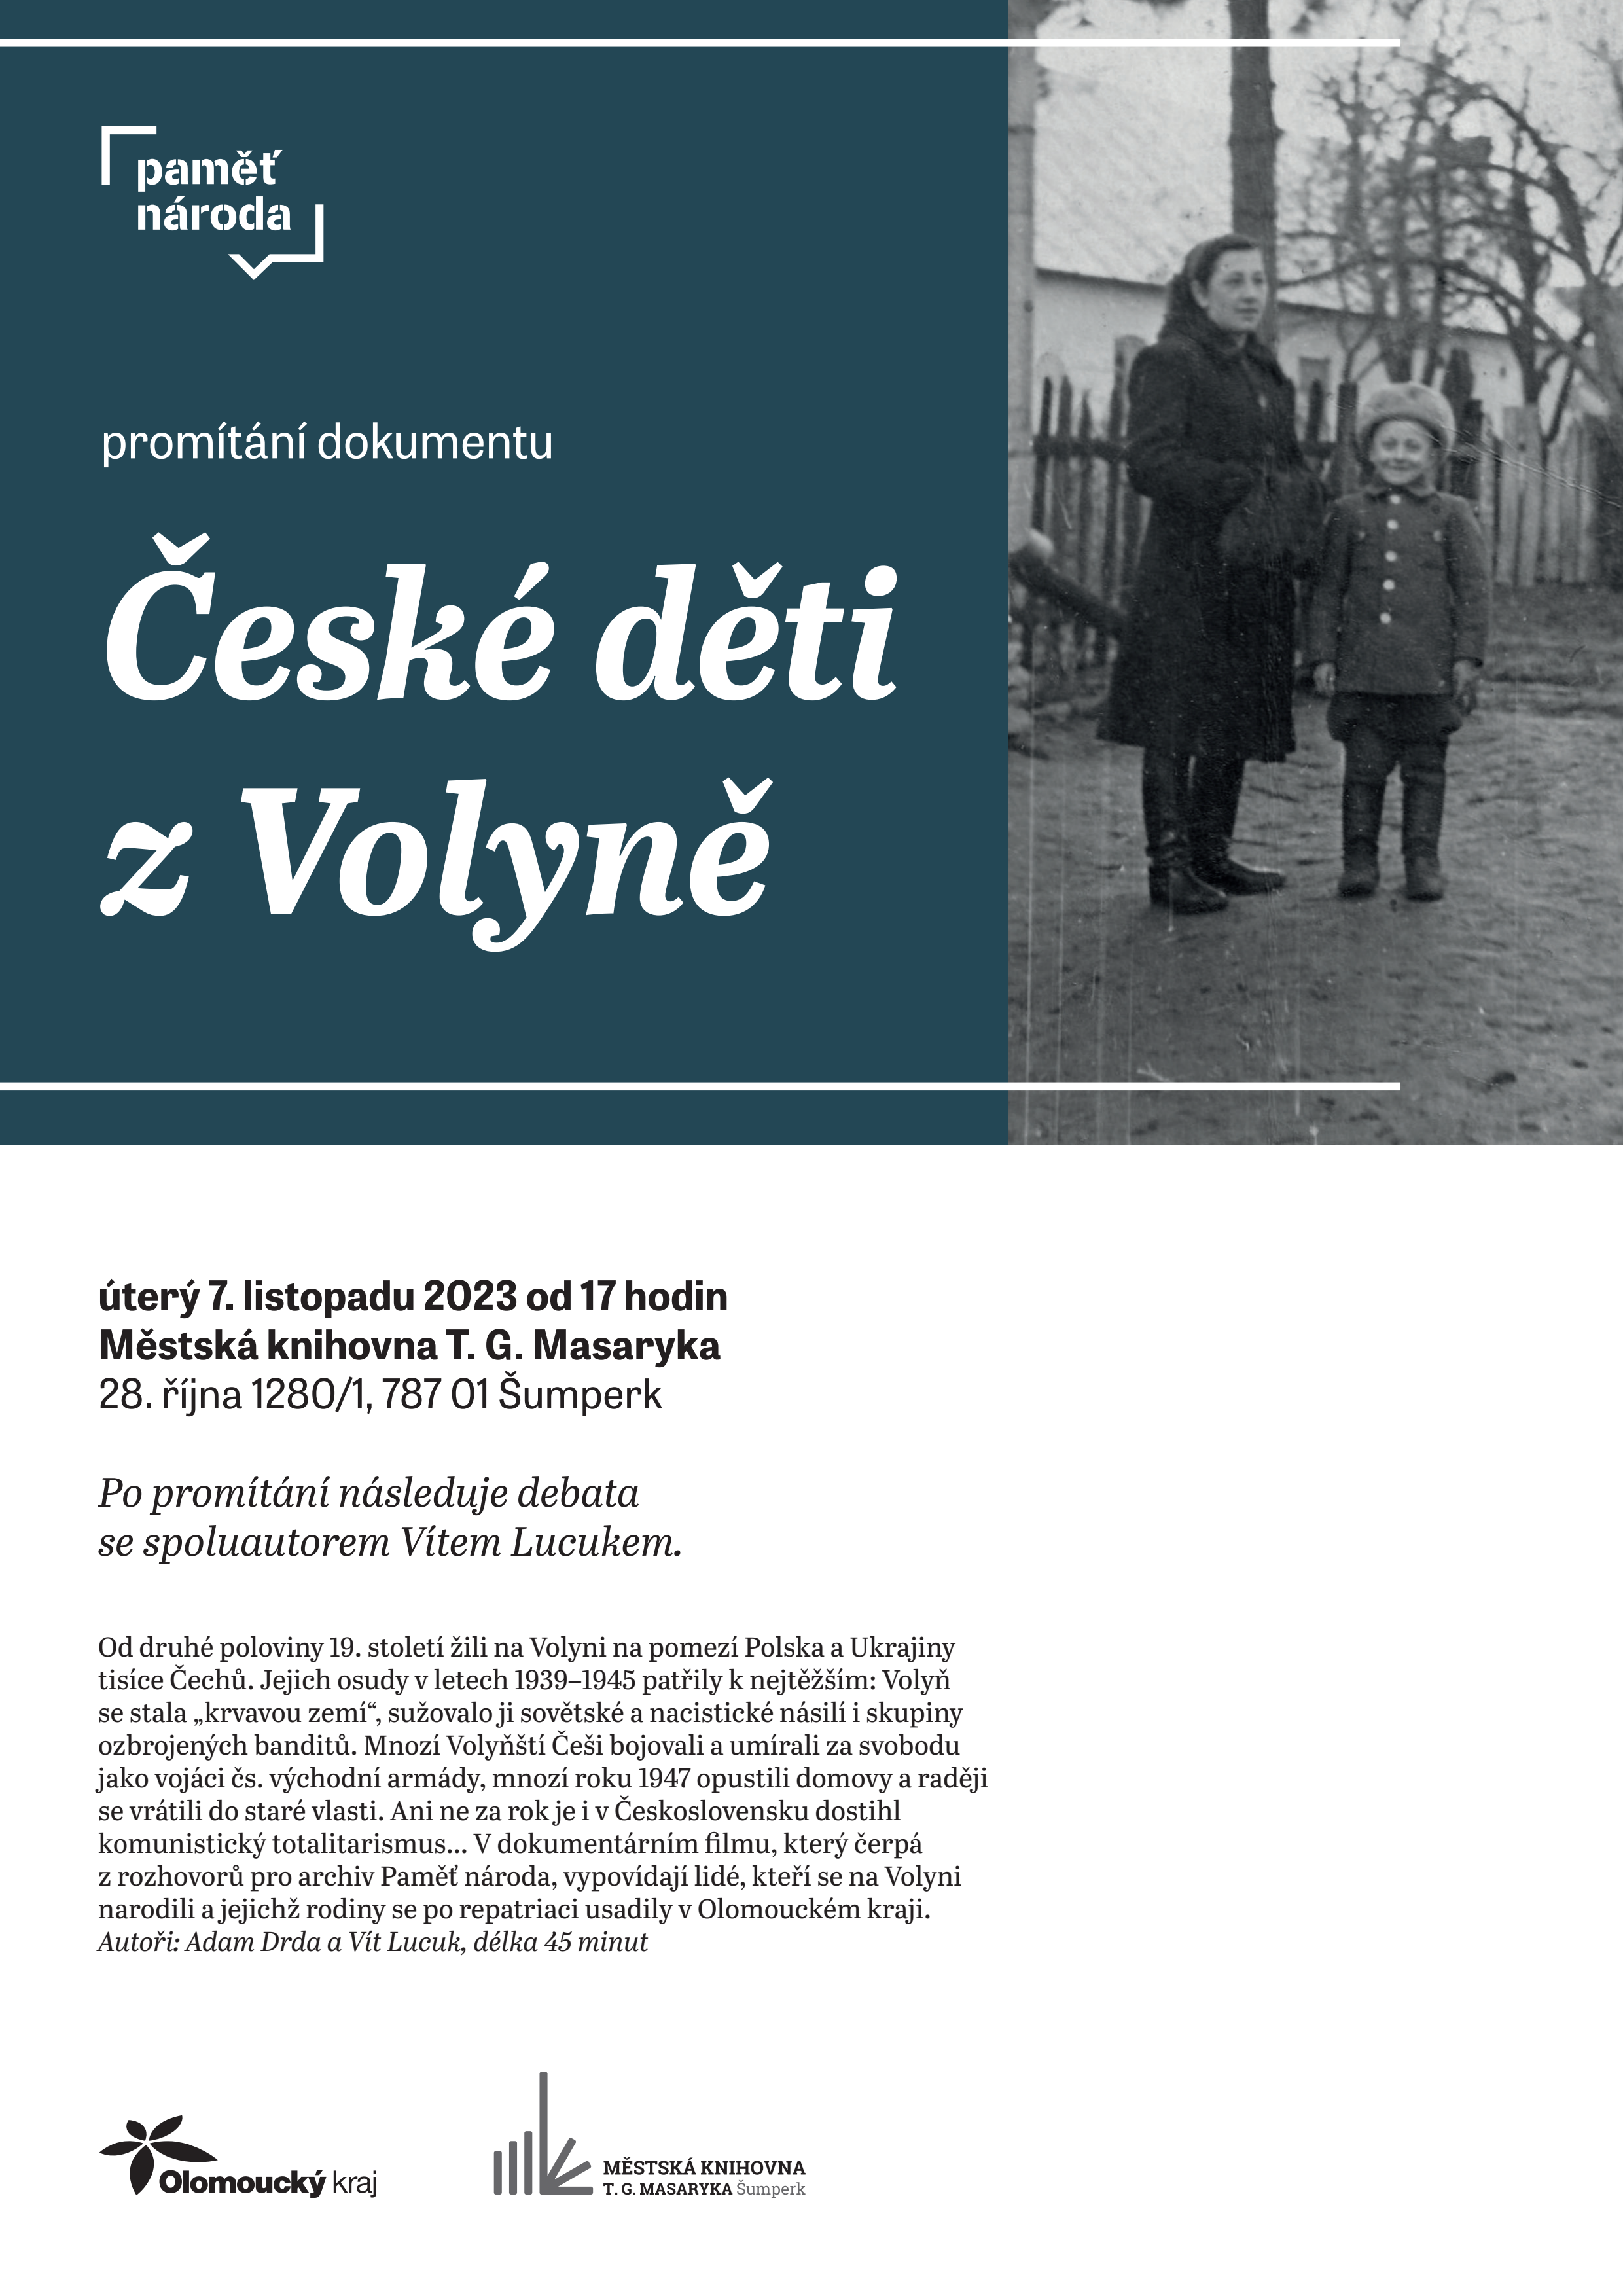 Plakát pro promítání dokumentu paměti národa České děti z Volyně od Adama Drdy a Víta Lucuka